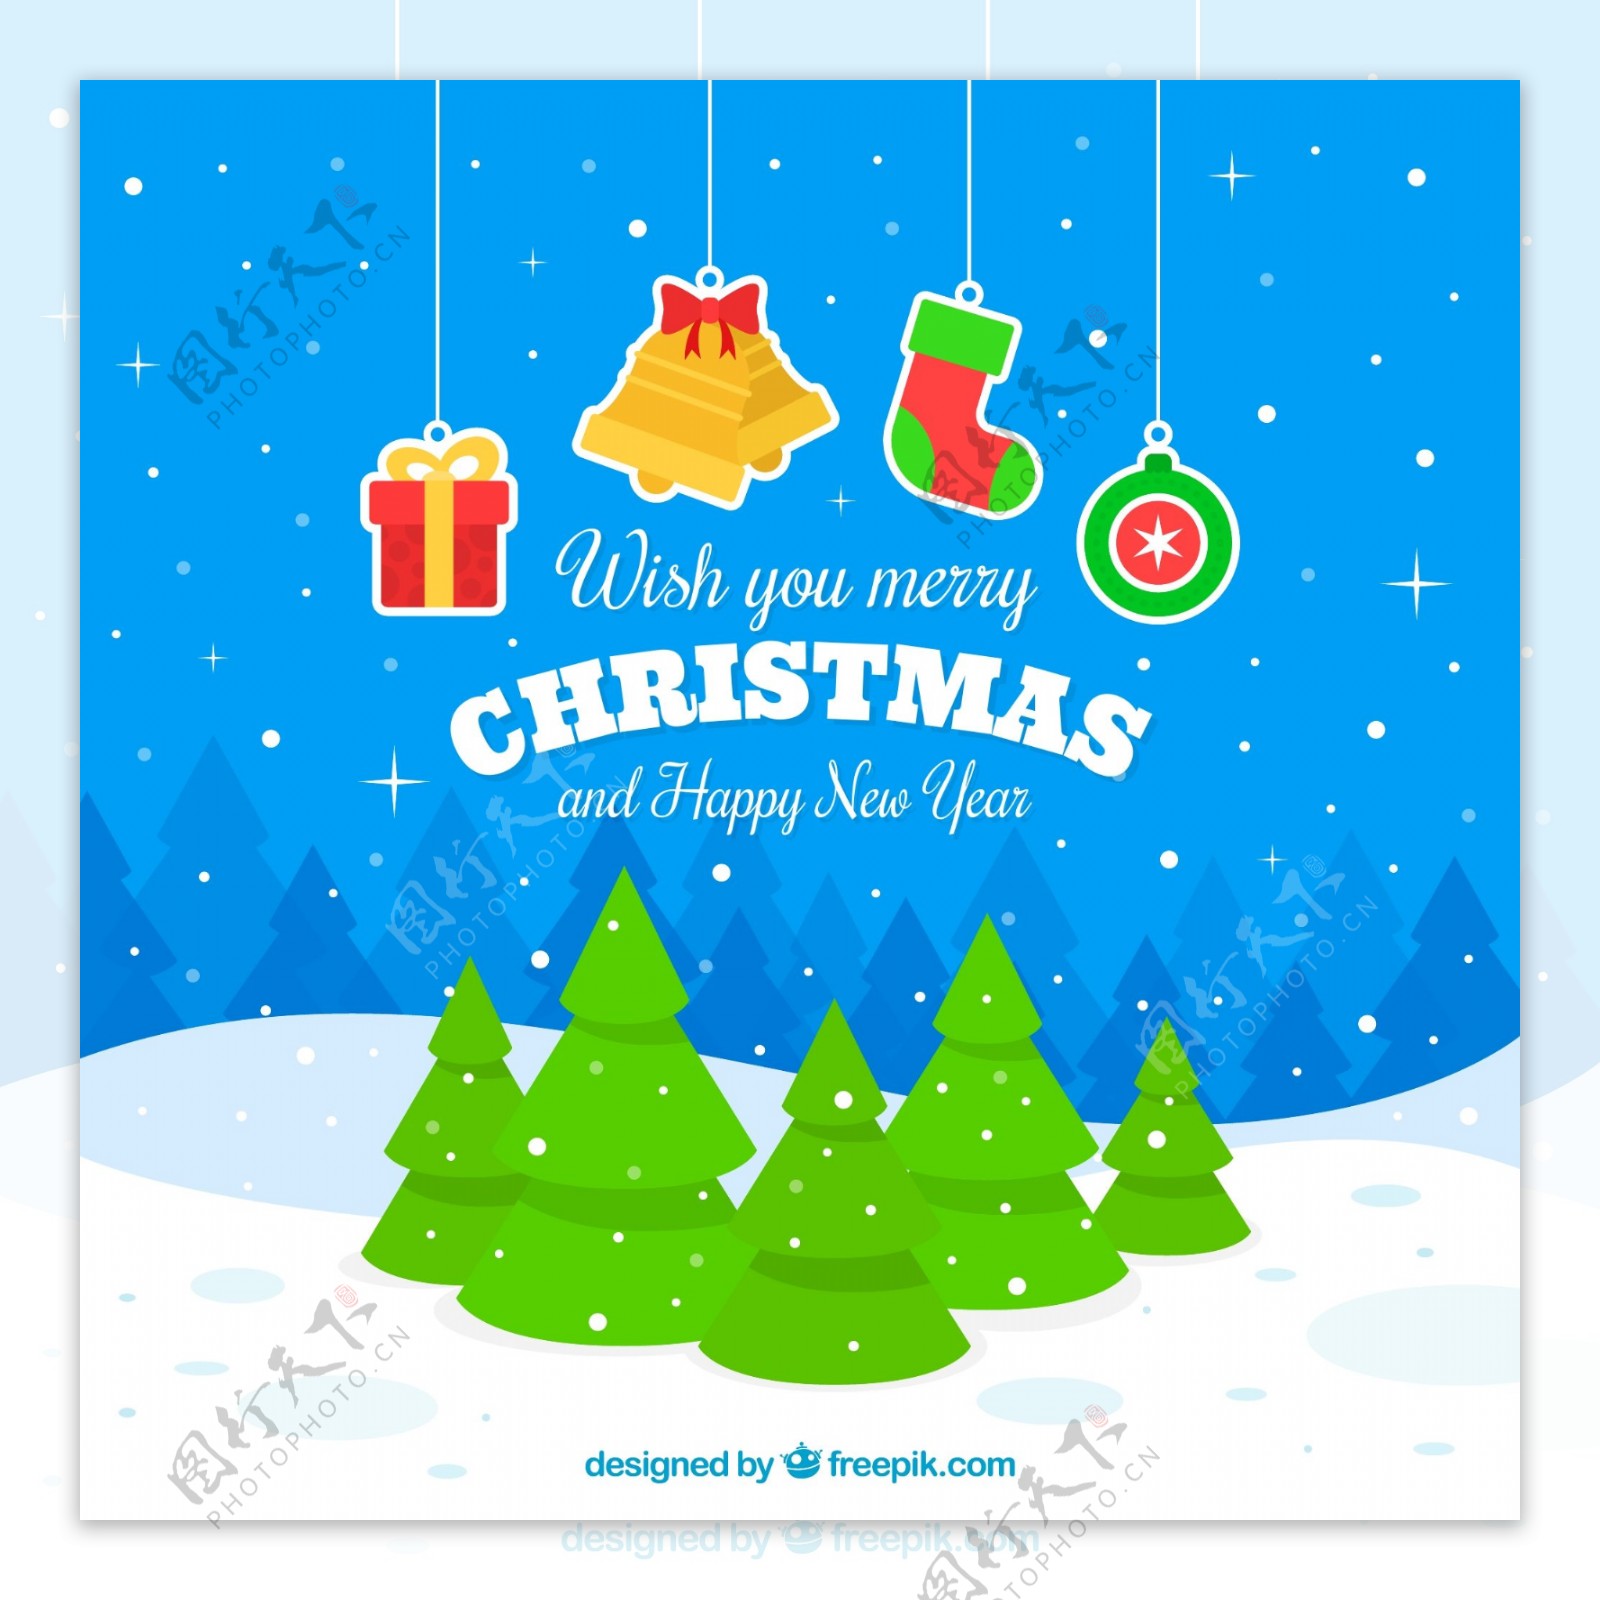 雪地圣诞树和挂饰节日贺卡矢量素材